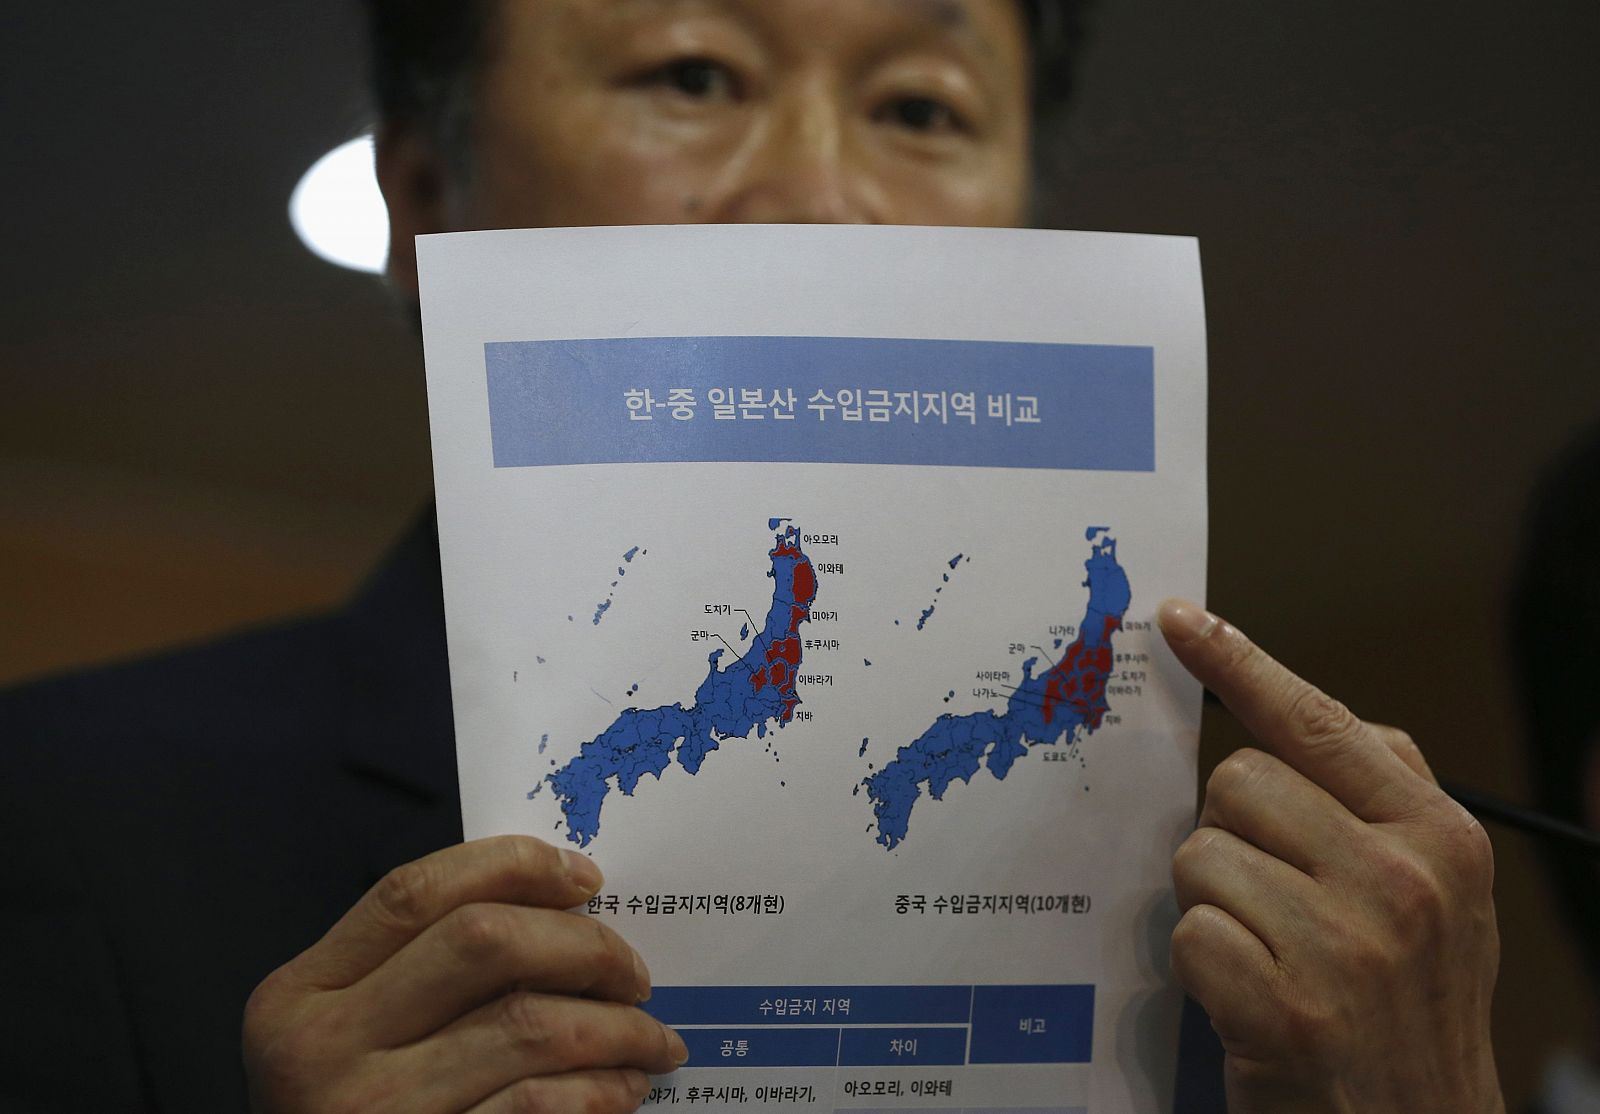 El viceministro surcoreano de Asuntos Marítimos y Pesca, Son Jae-hak, muestra en un documento las prefecturas japonesas de las zonas prohibiciones de importación (en rojo) impuestas por Corea del Sur y China, respectivamente.